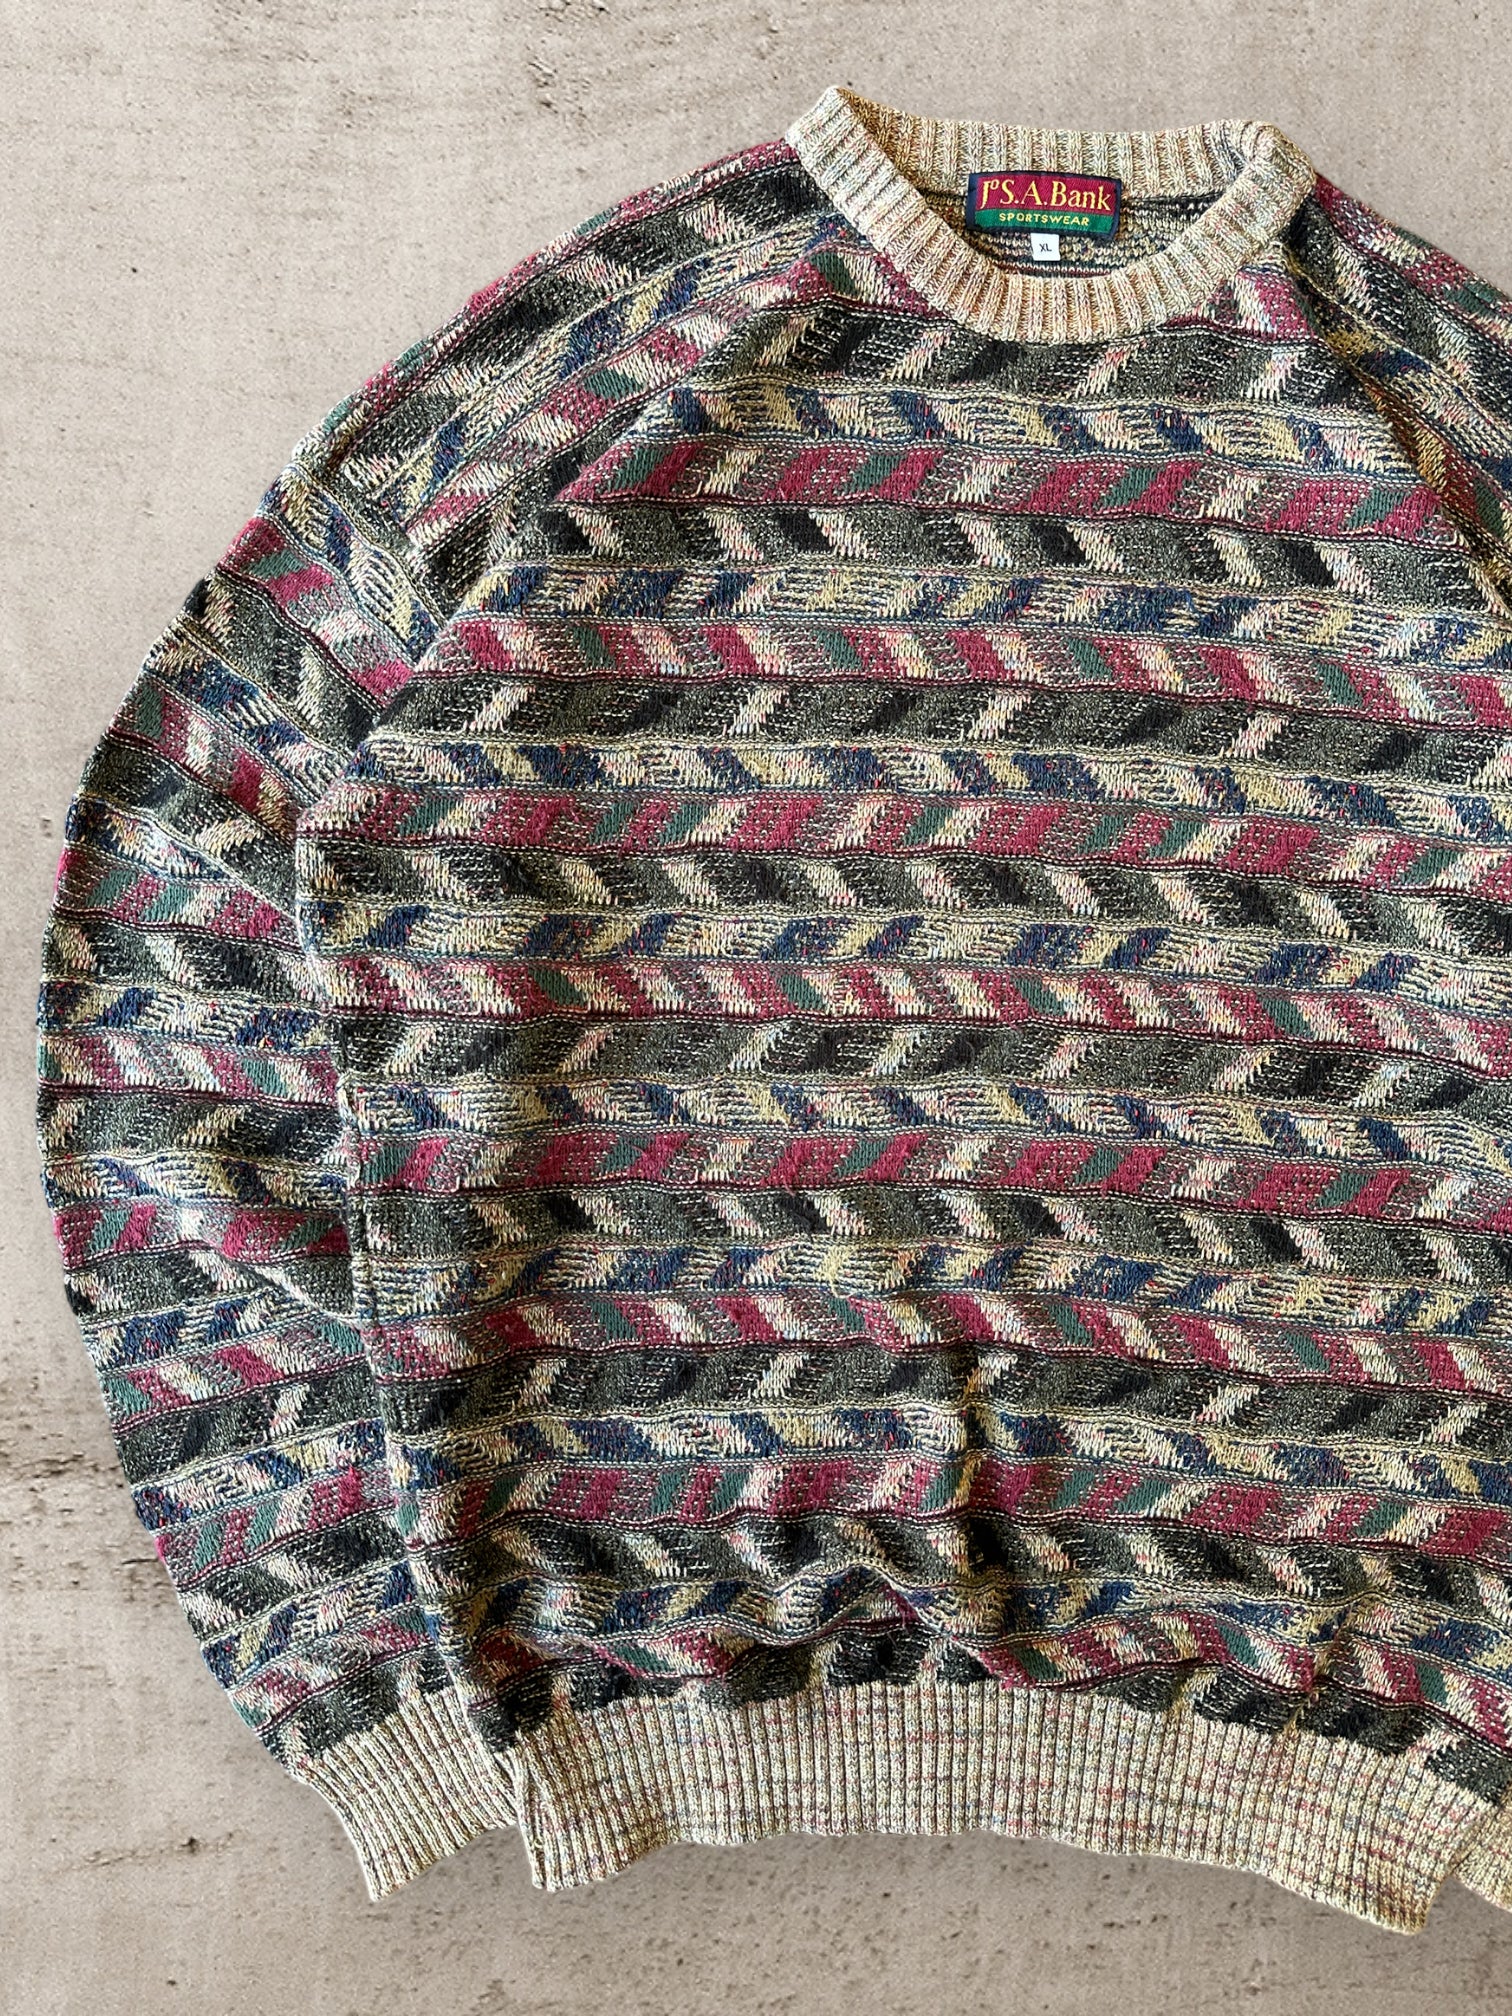 90s JSA Sportswear Multicolor Pattered Knit Sweater - Large